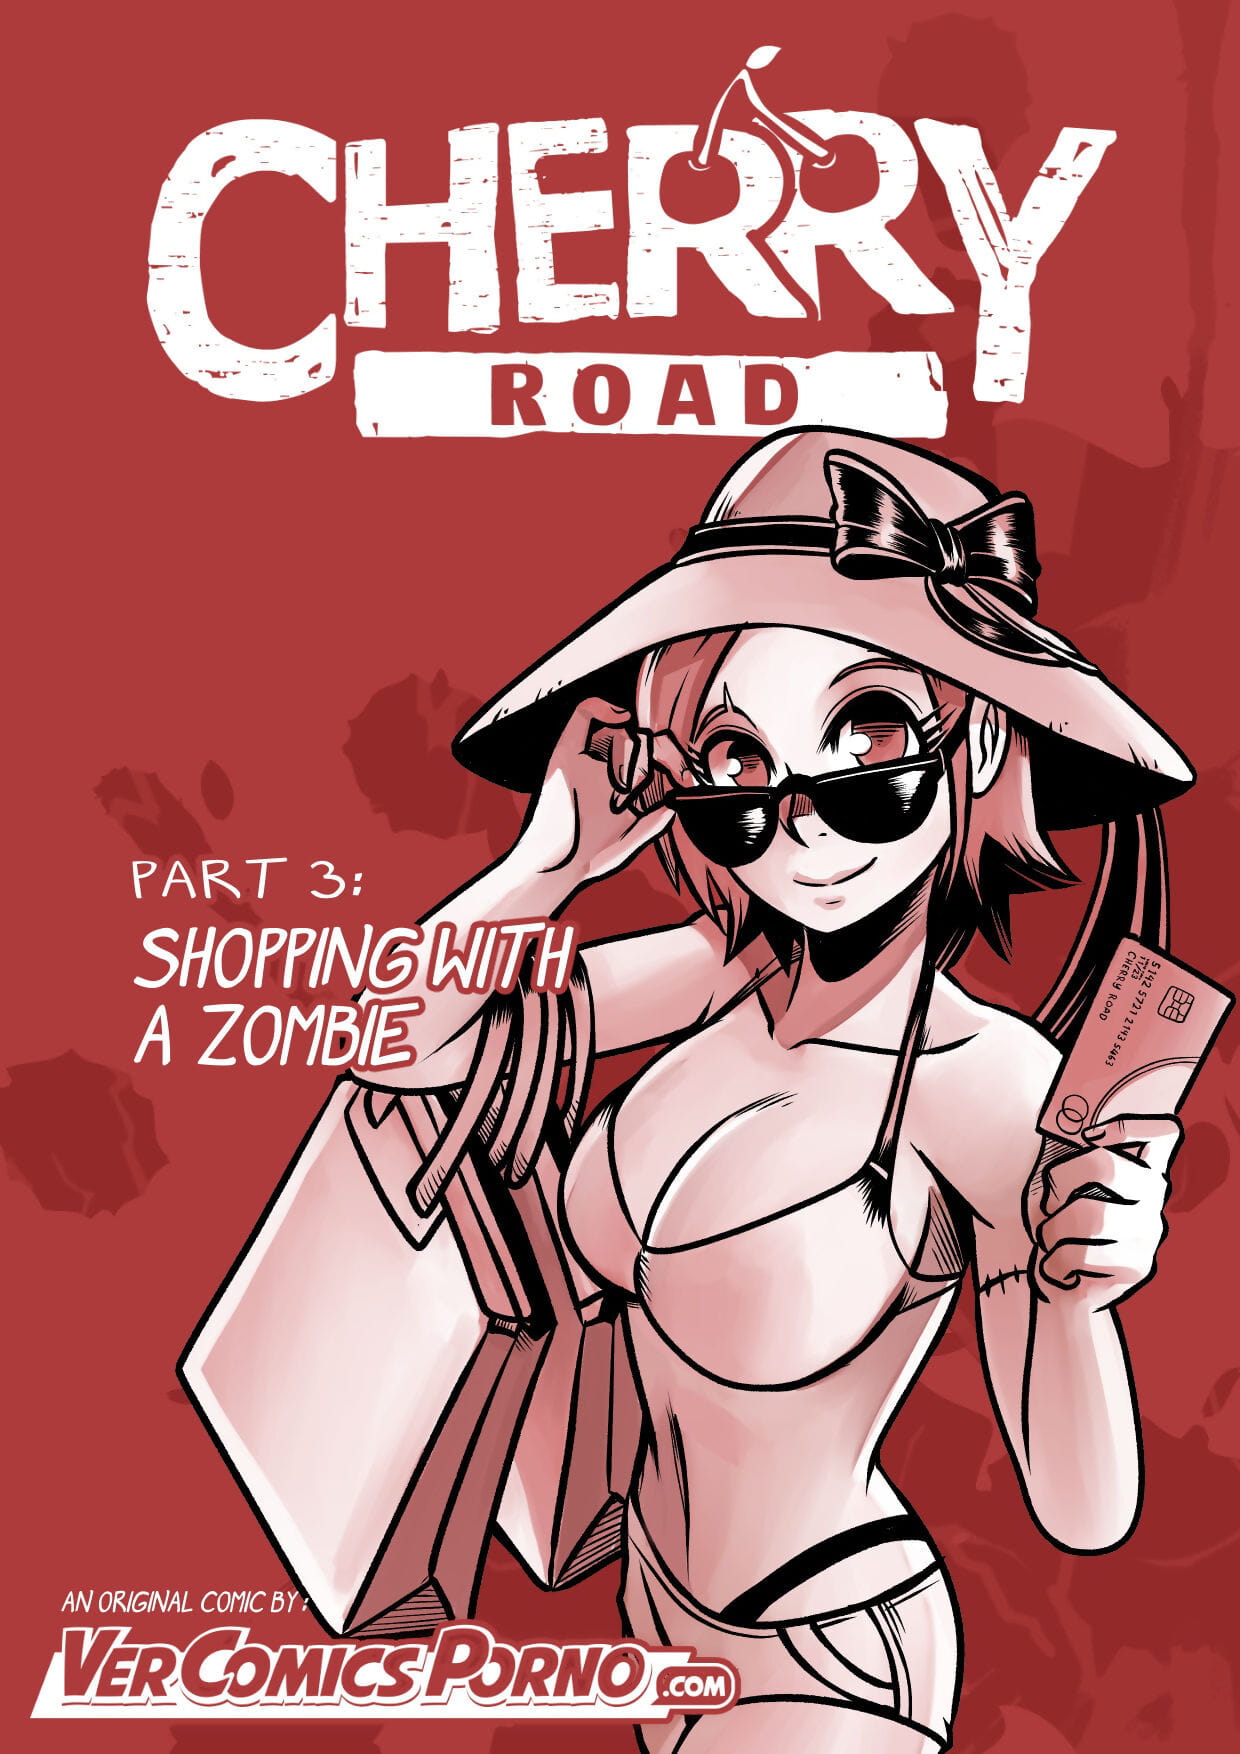 Cherry strada parte 3: Shopping Con un zombie